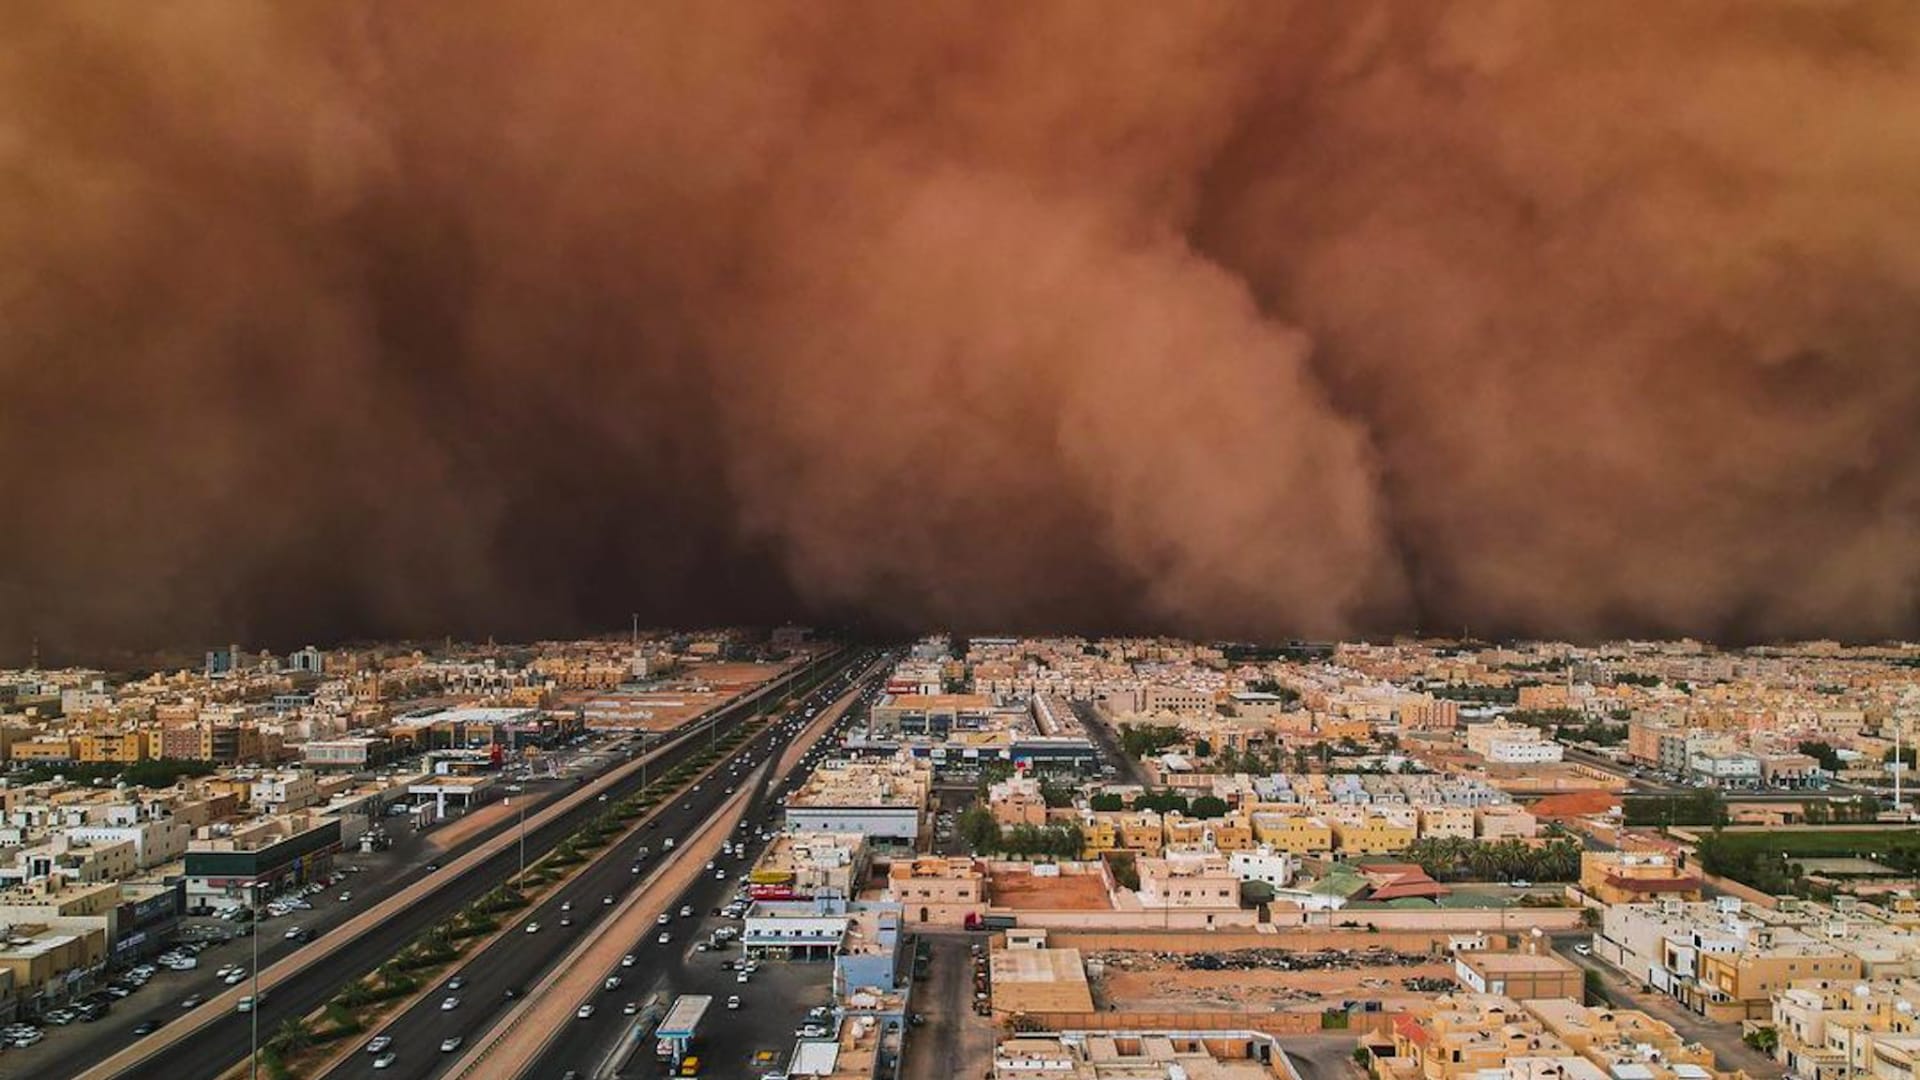 "من أصعب الصور التي التقطها".. سعودي يوثق لحظة مهيبة لدخول عاصفة رملية للرياض